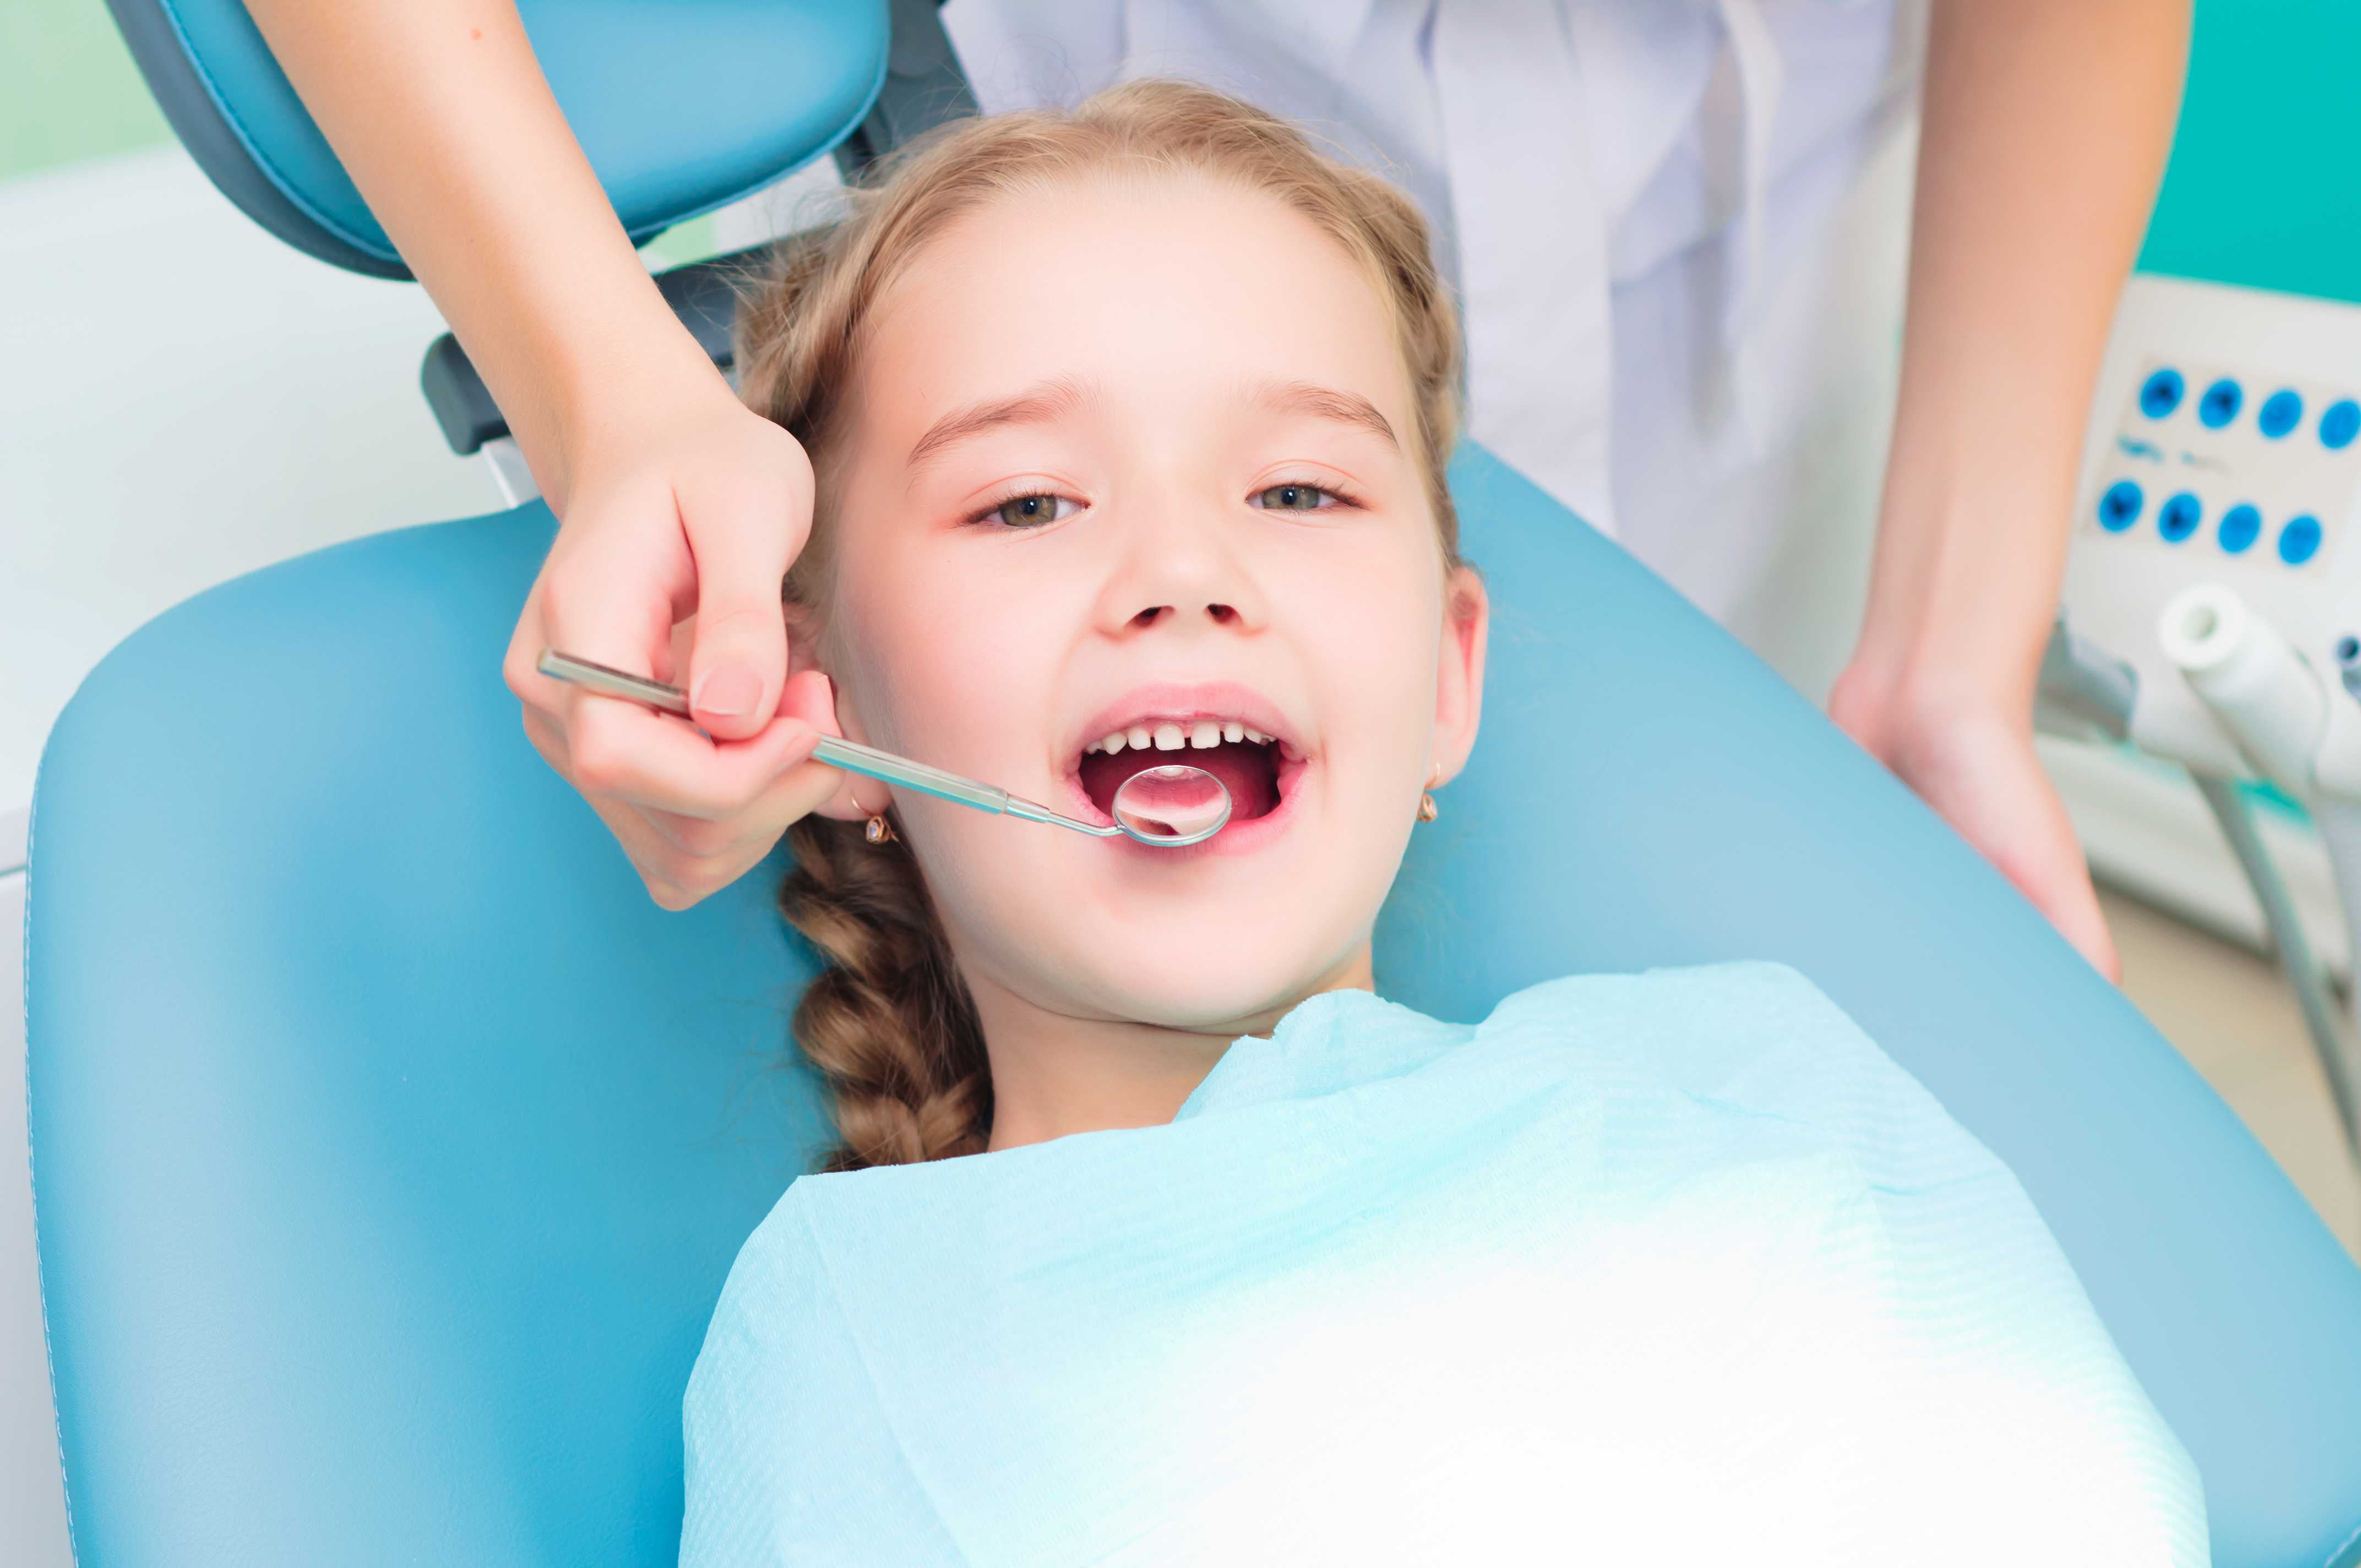 Полость рта для стоматолога. Гигиена зубов для детей. Ребенок у стоматолога. Гигиена зубов и полости рта для детей. Профессиональная гигиена зубов у детей.